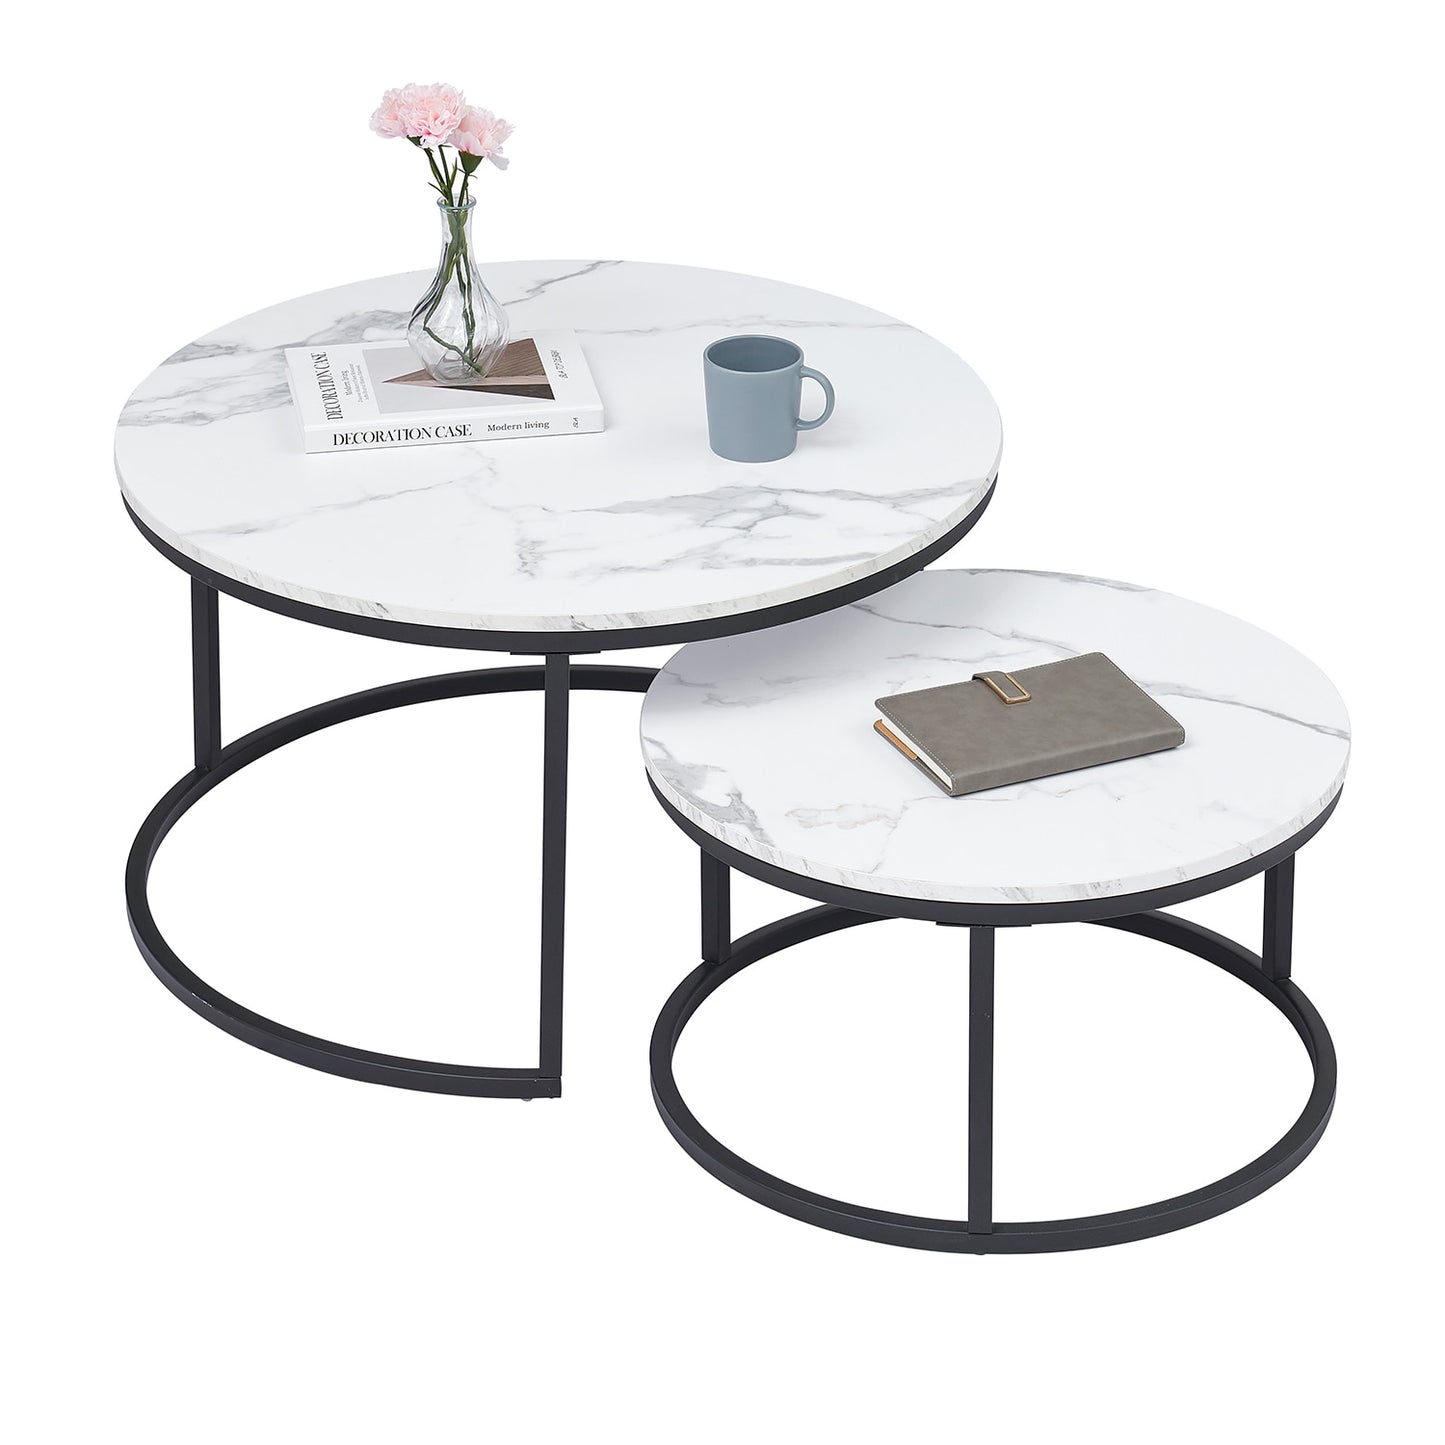 Marmeren salontafel set 2 stuks - Design Meubelz